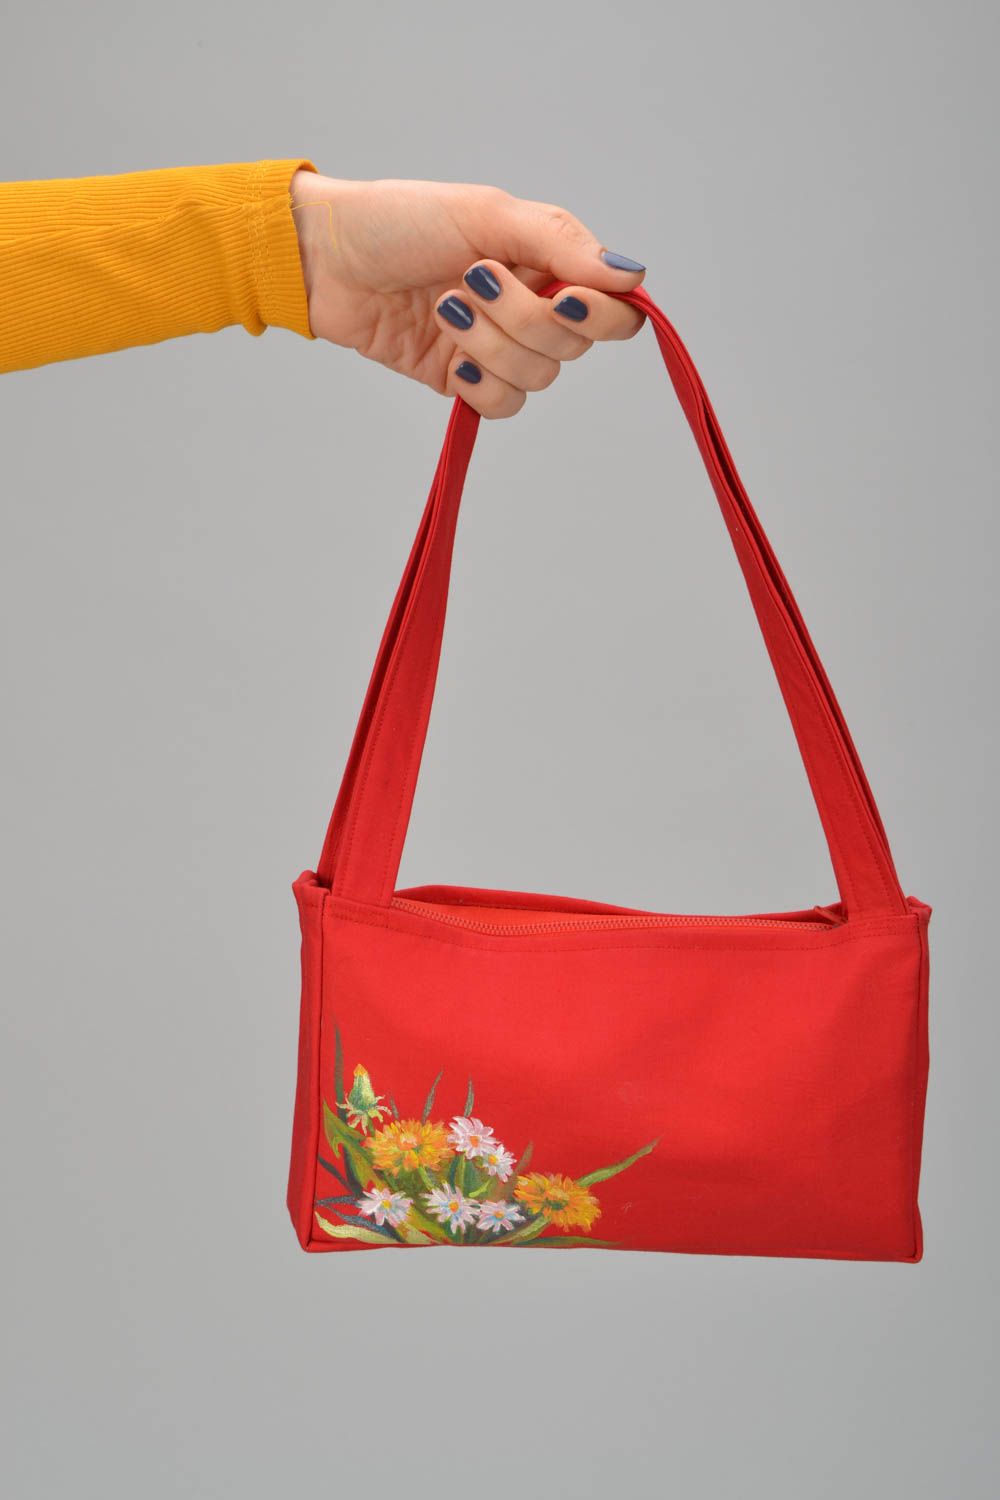 Textil Handtasche in Rot  foto 2